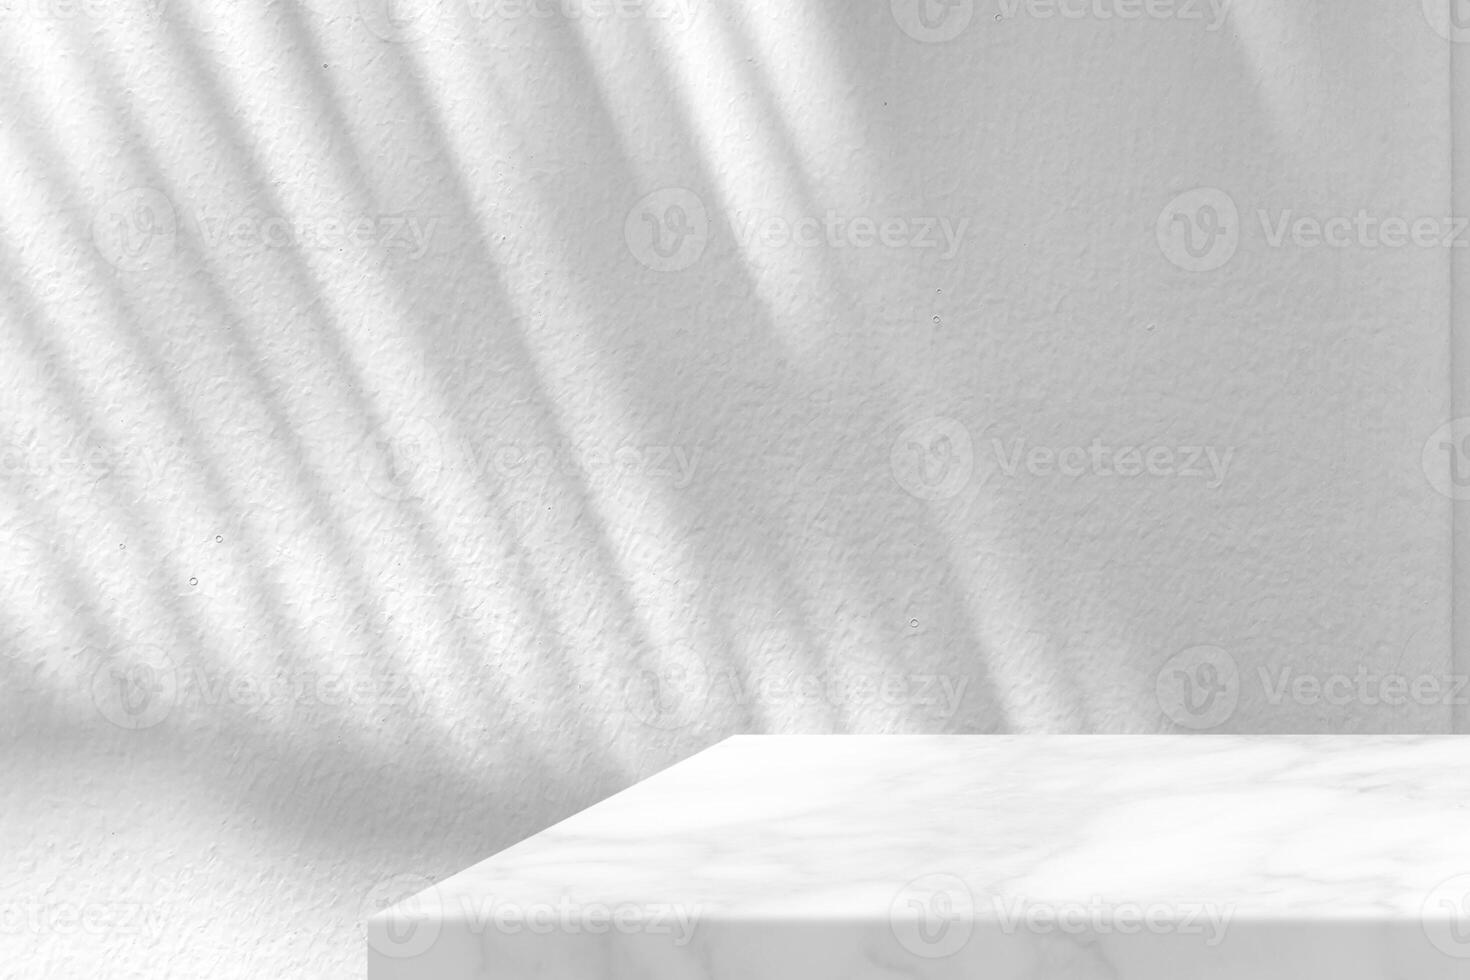 minimal blanc marbre table coin avec feuilles ombre sur stuc mur texture arrière-plan, adapté pour produit présentation toile de fond, afficher, et moquer en haut. photo